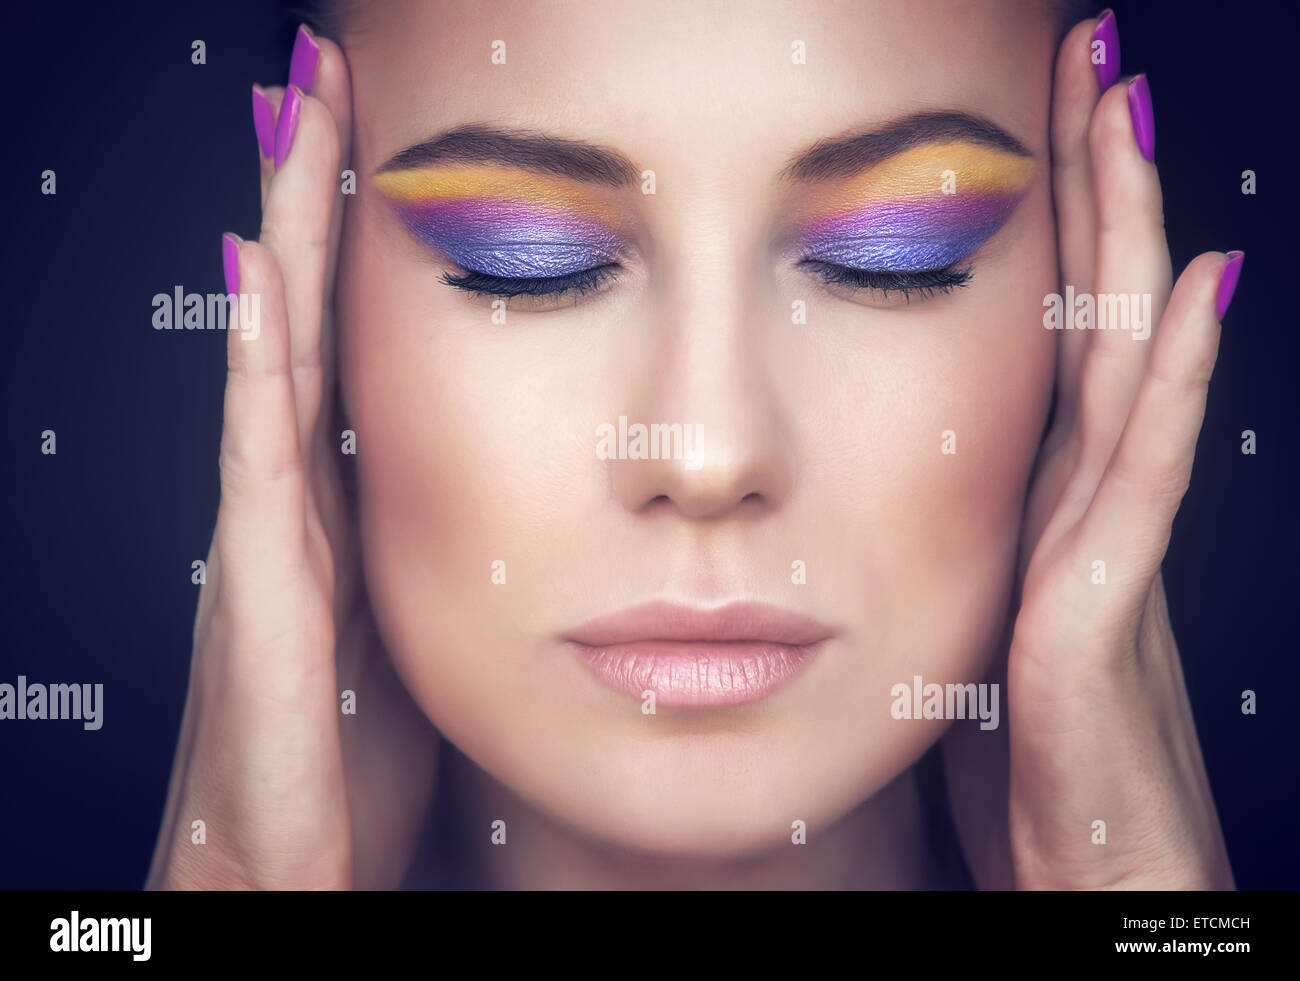 Closeup portrait of a Beautiful woman face aux couleurs de maquillage élégant sur fond sombre, modèle avec les yeux fermés Banque D'Images